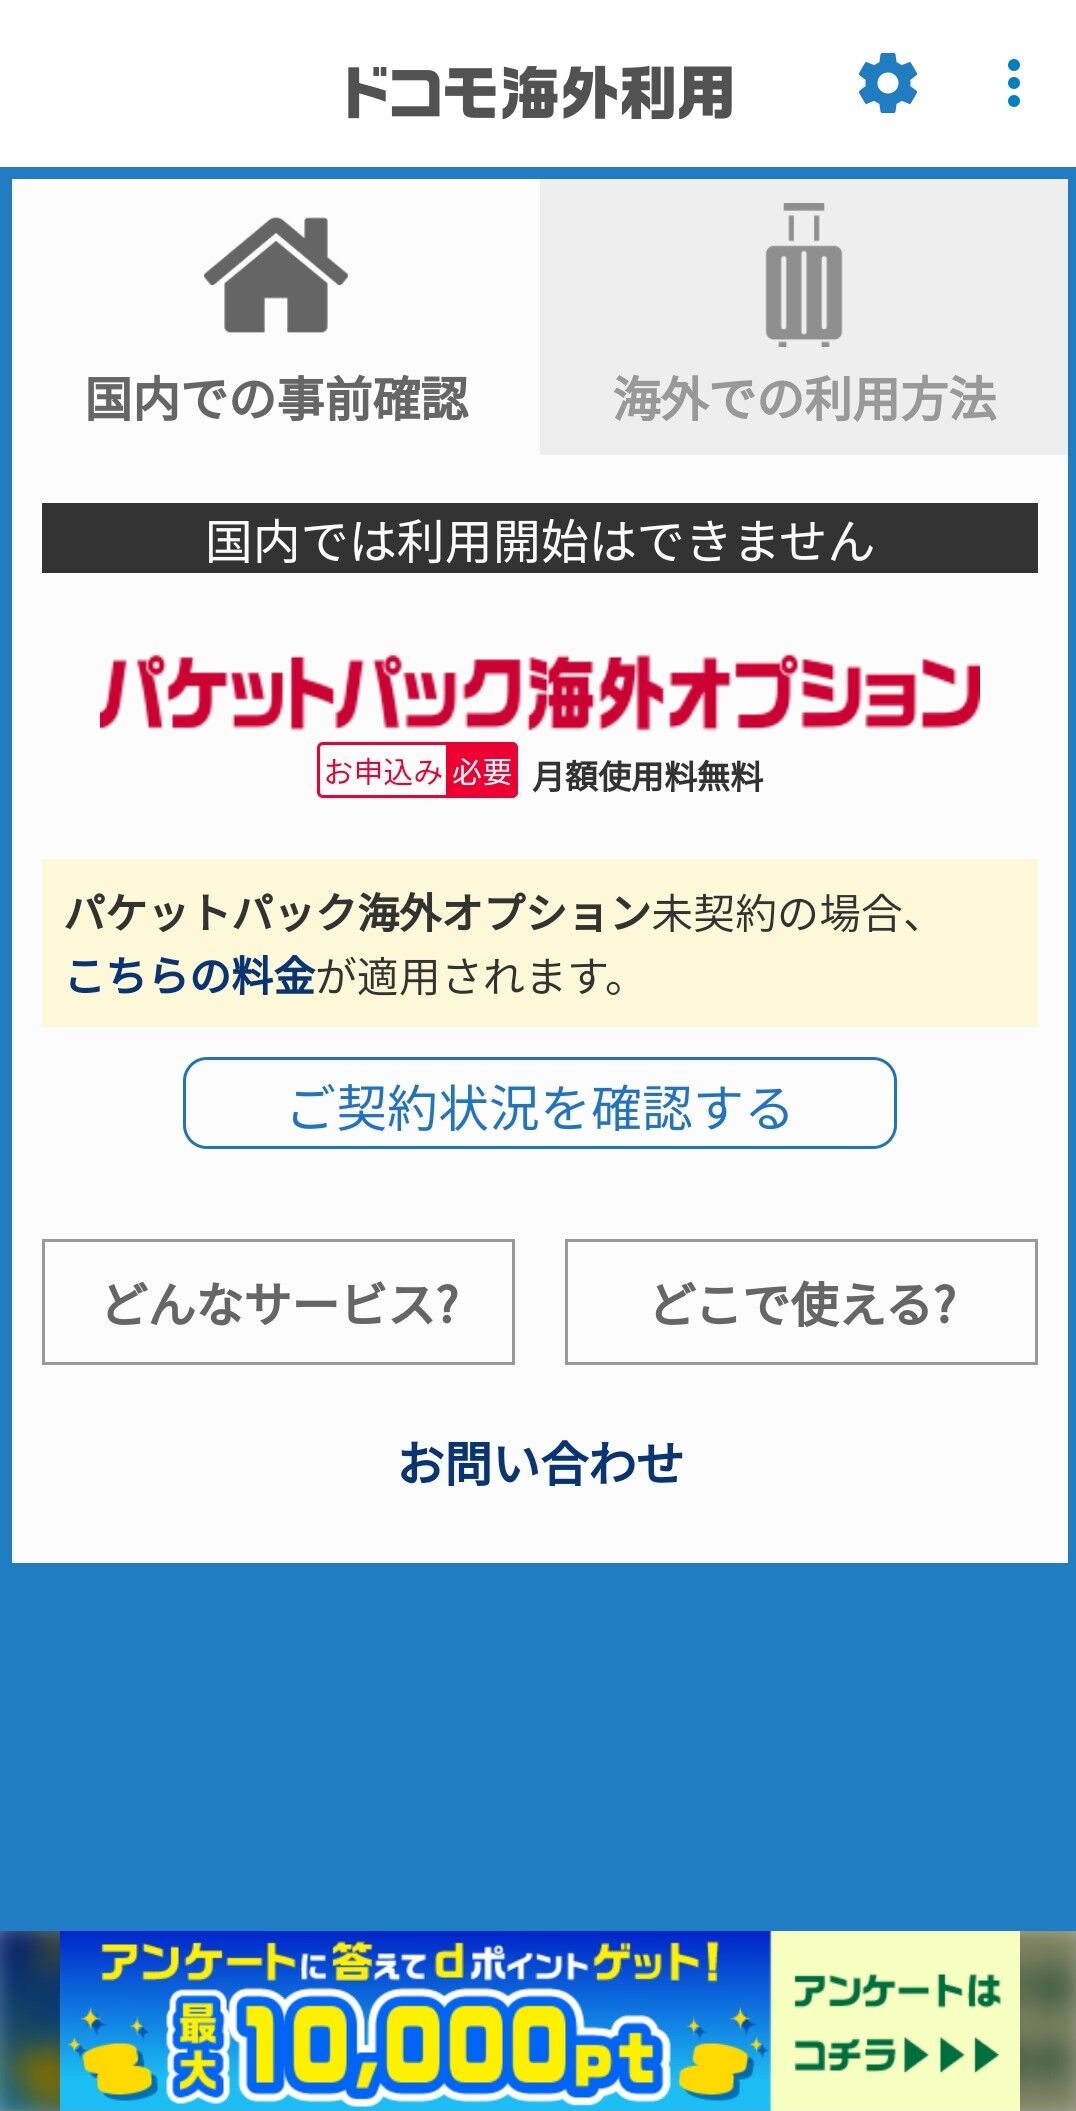 アプリ ドコモ海外利用 アンケート回答で最大10 000ptプレゼント Keitaikid